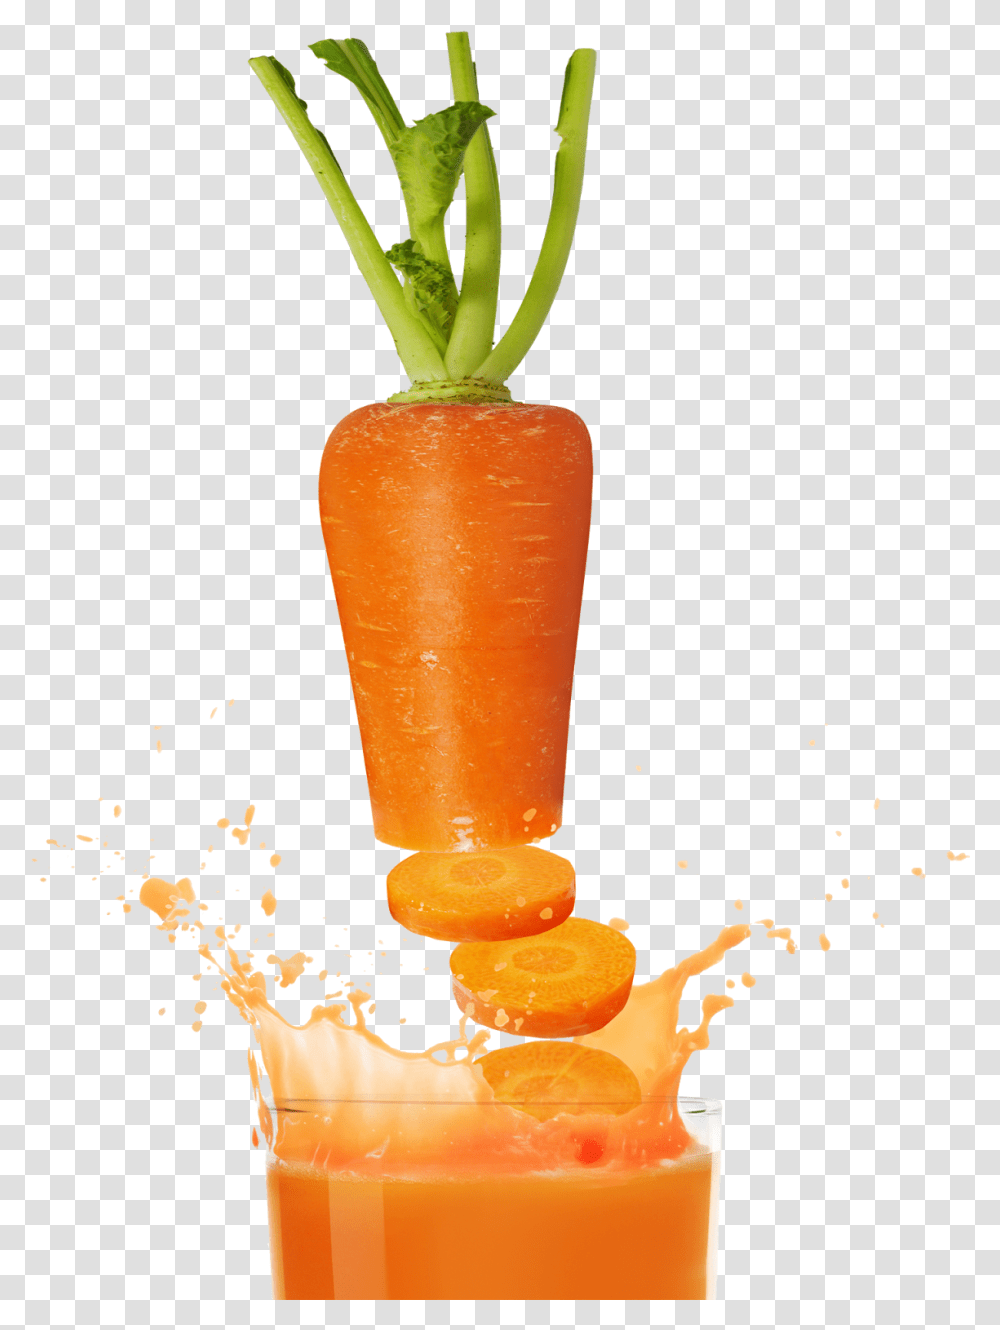 Juice Image Healthy Drink Juices For Life Menu, Beverage, Plant, Carrot, Vegetable Transparent Png